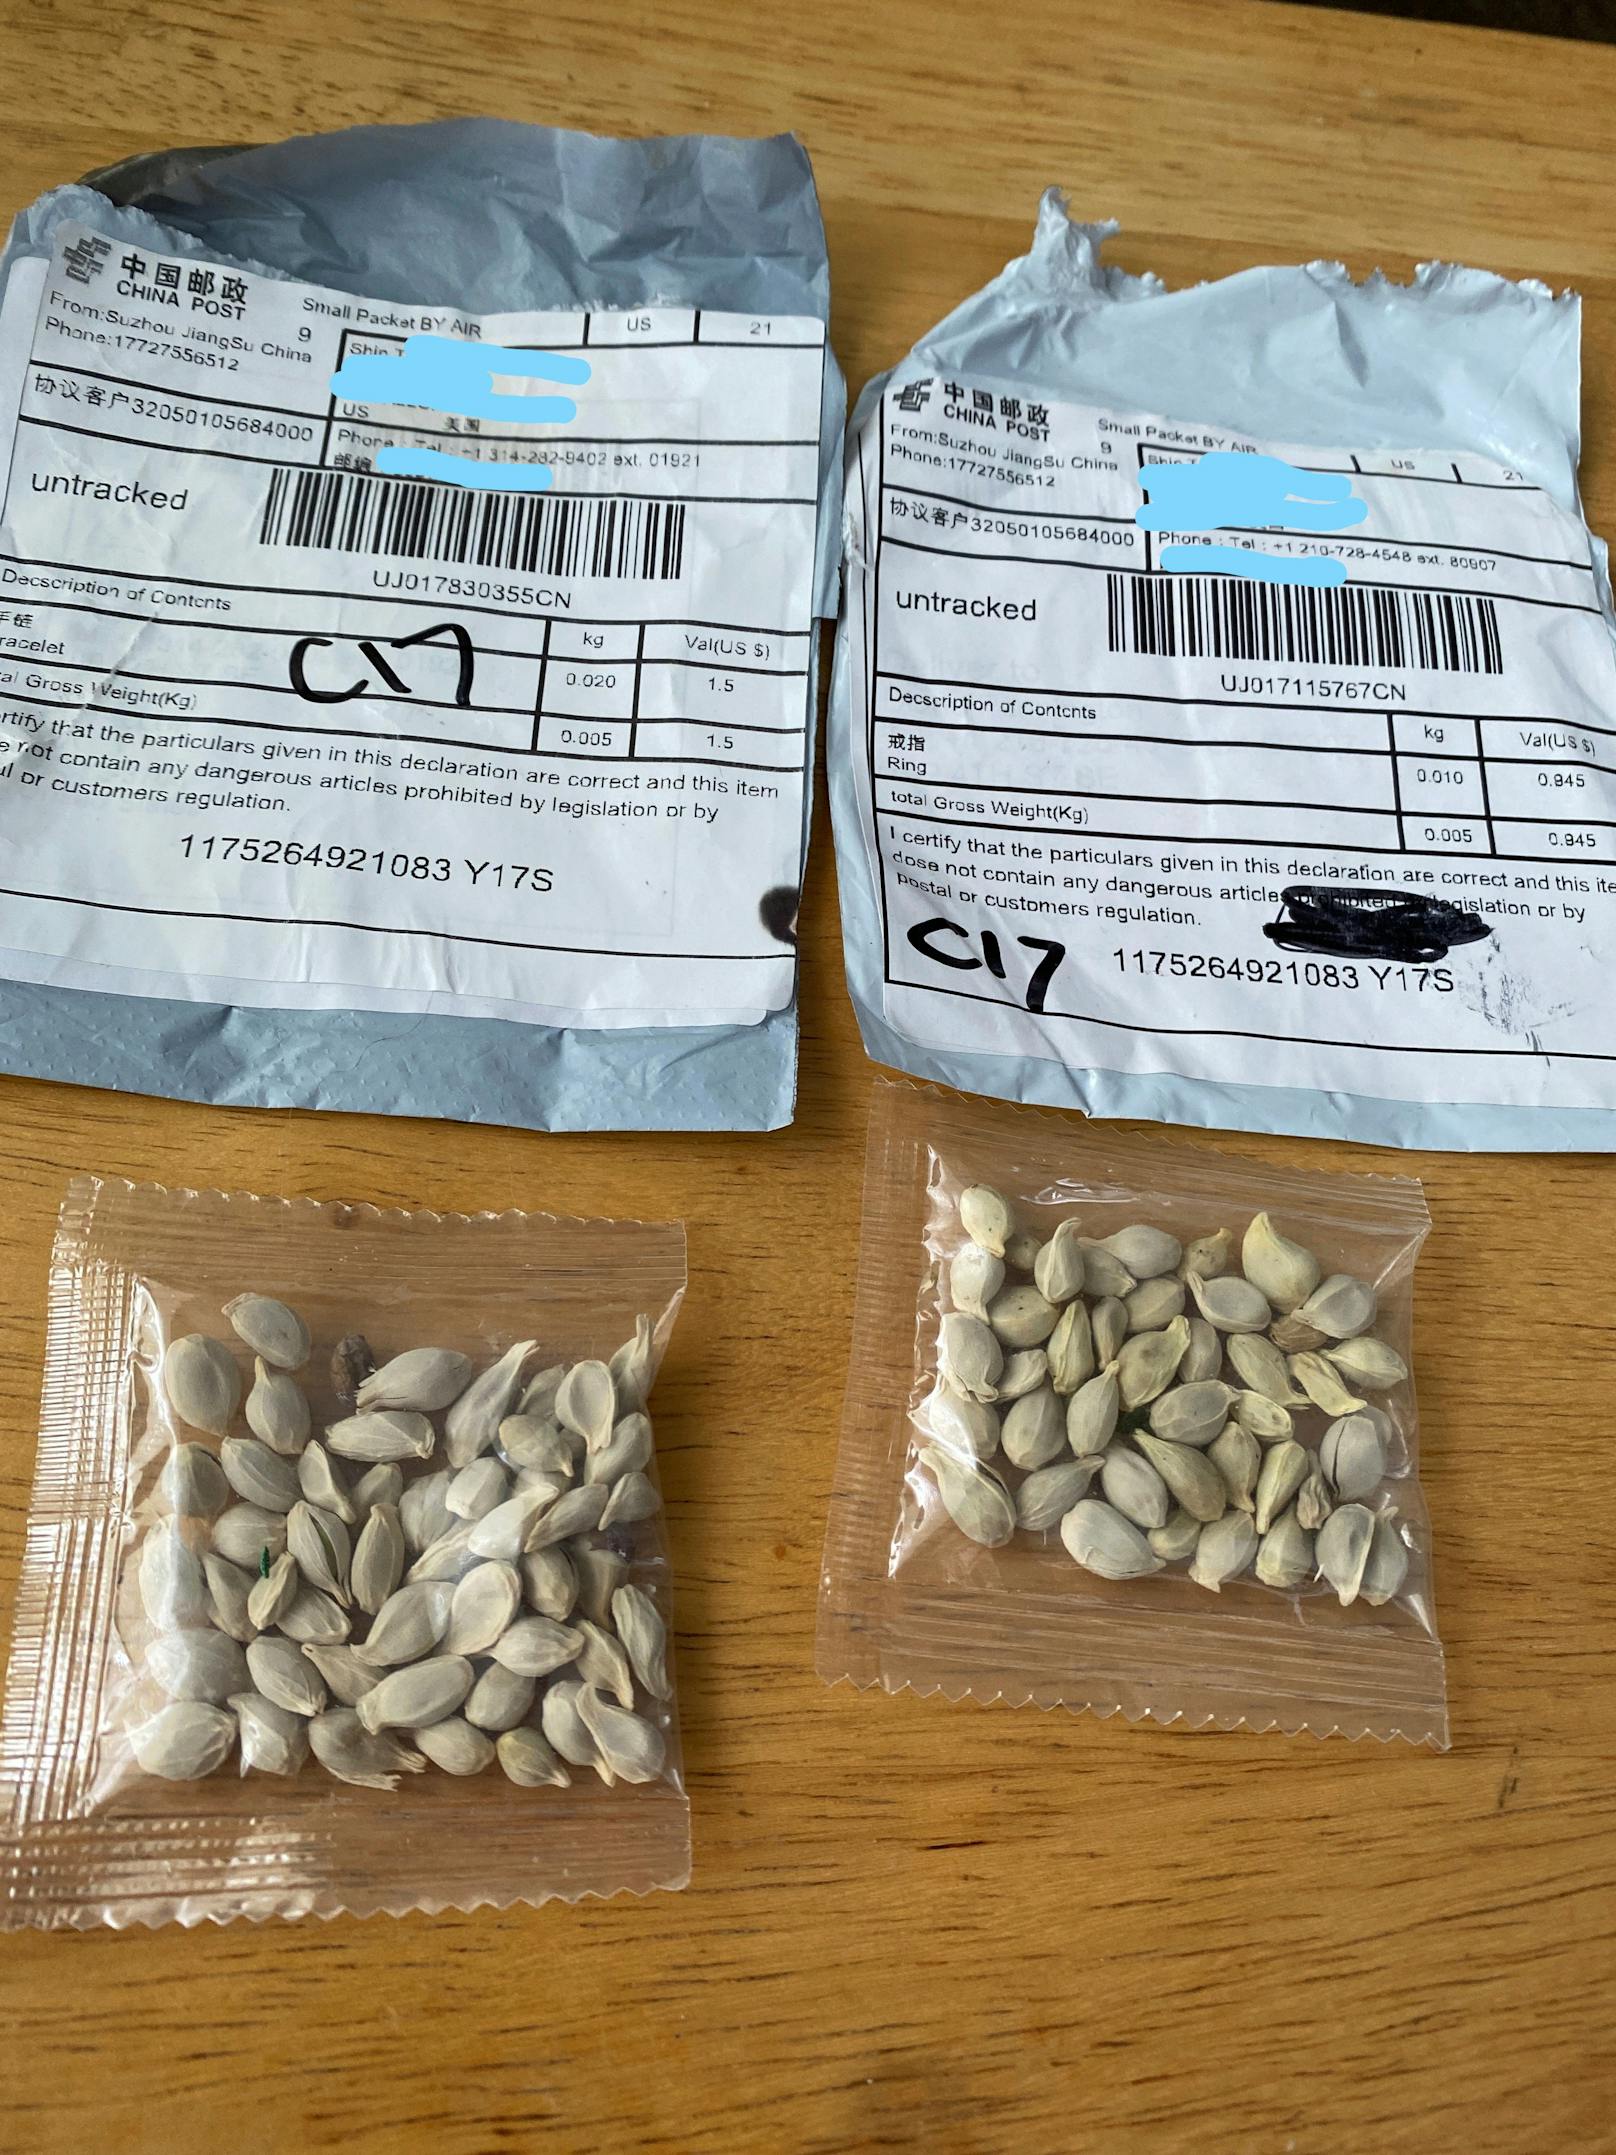 In den aus China kommenden Paketen fanden viele die mysteriösen Samen.